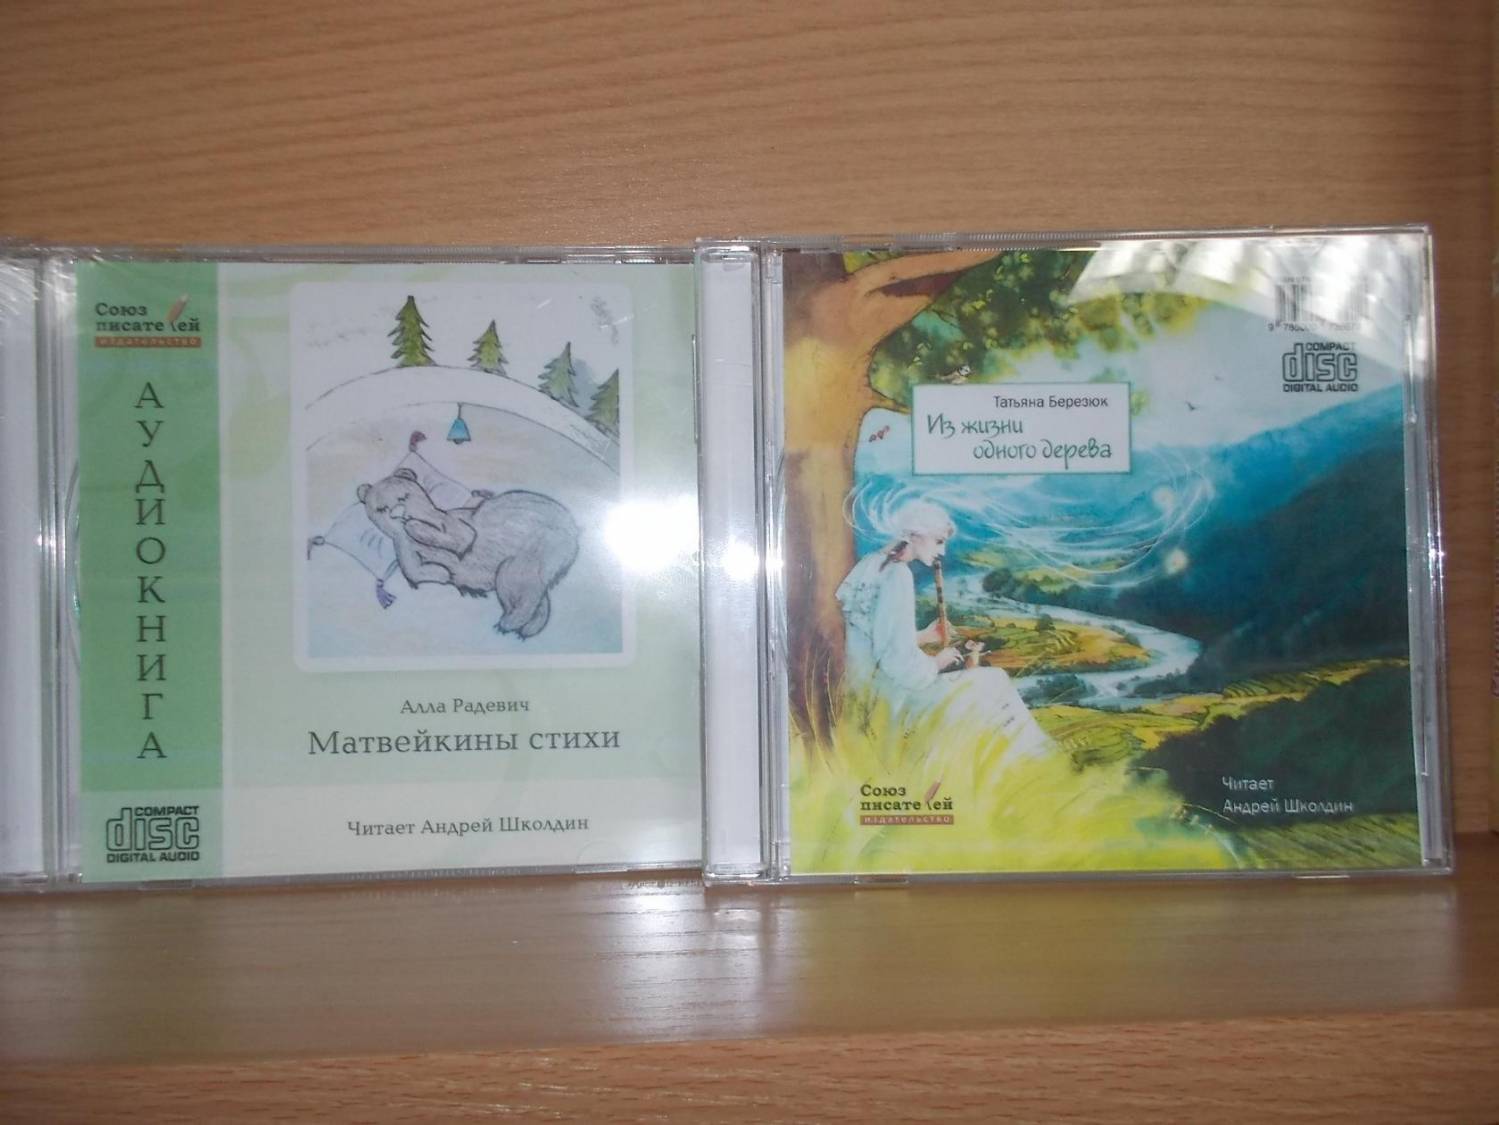 В продаже появились две новые аудиокниги для детей!